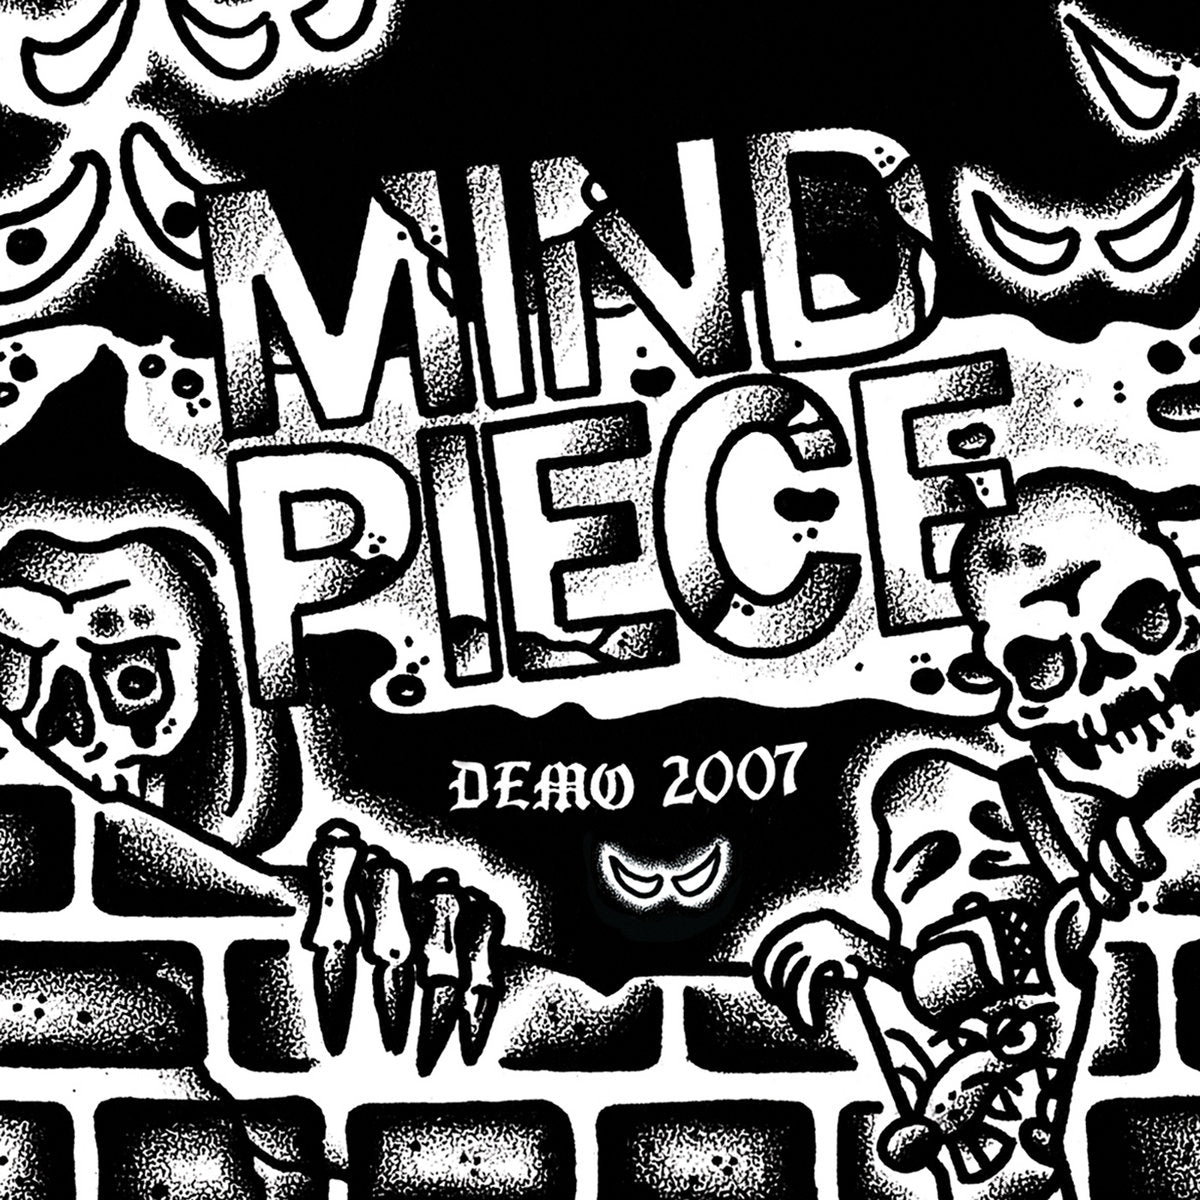 MIND PIECE "Demo 2007" 7"